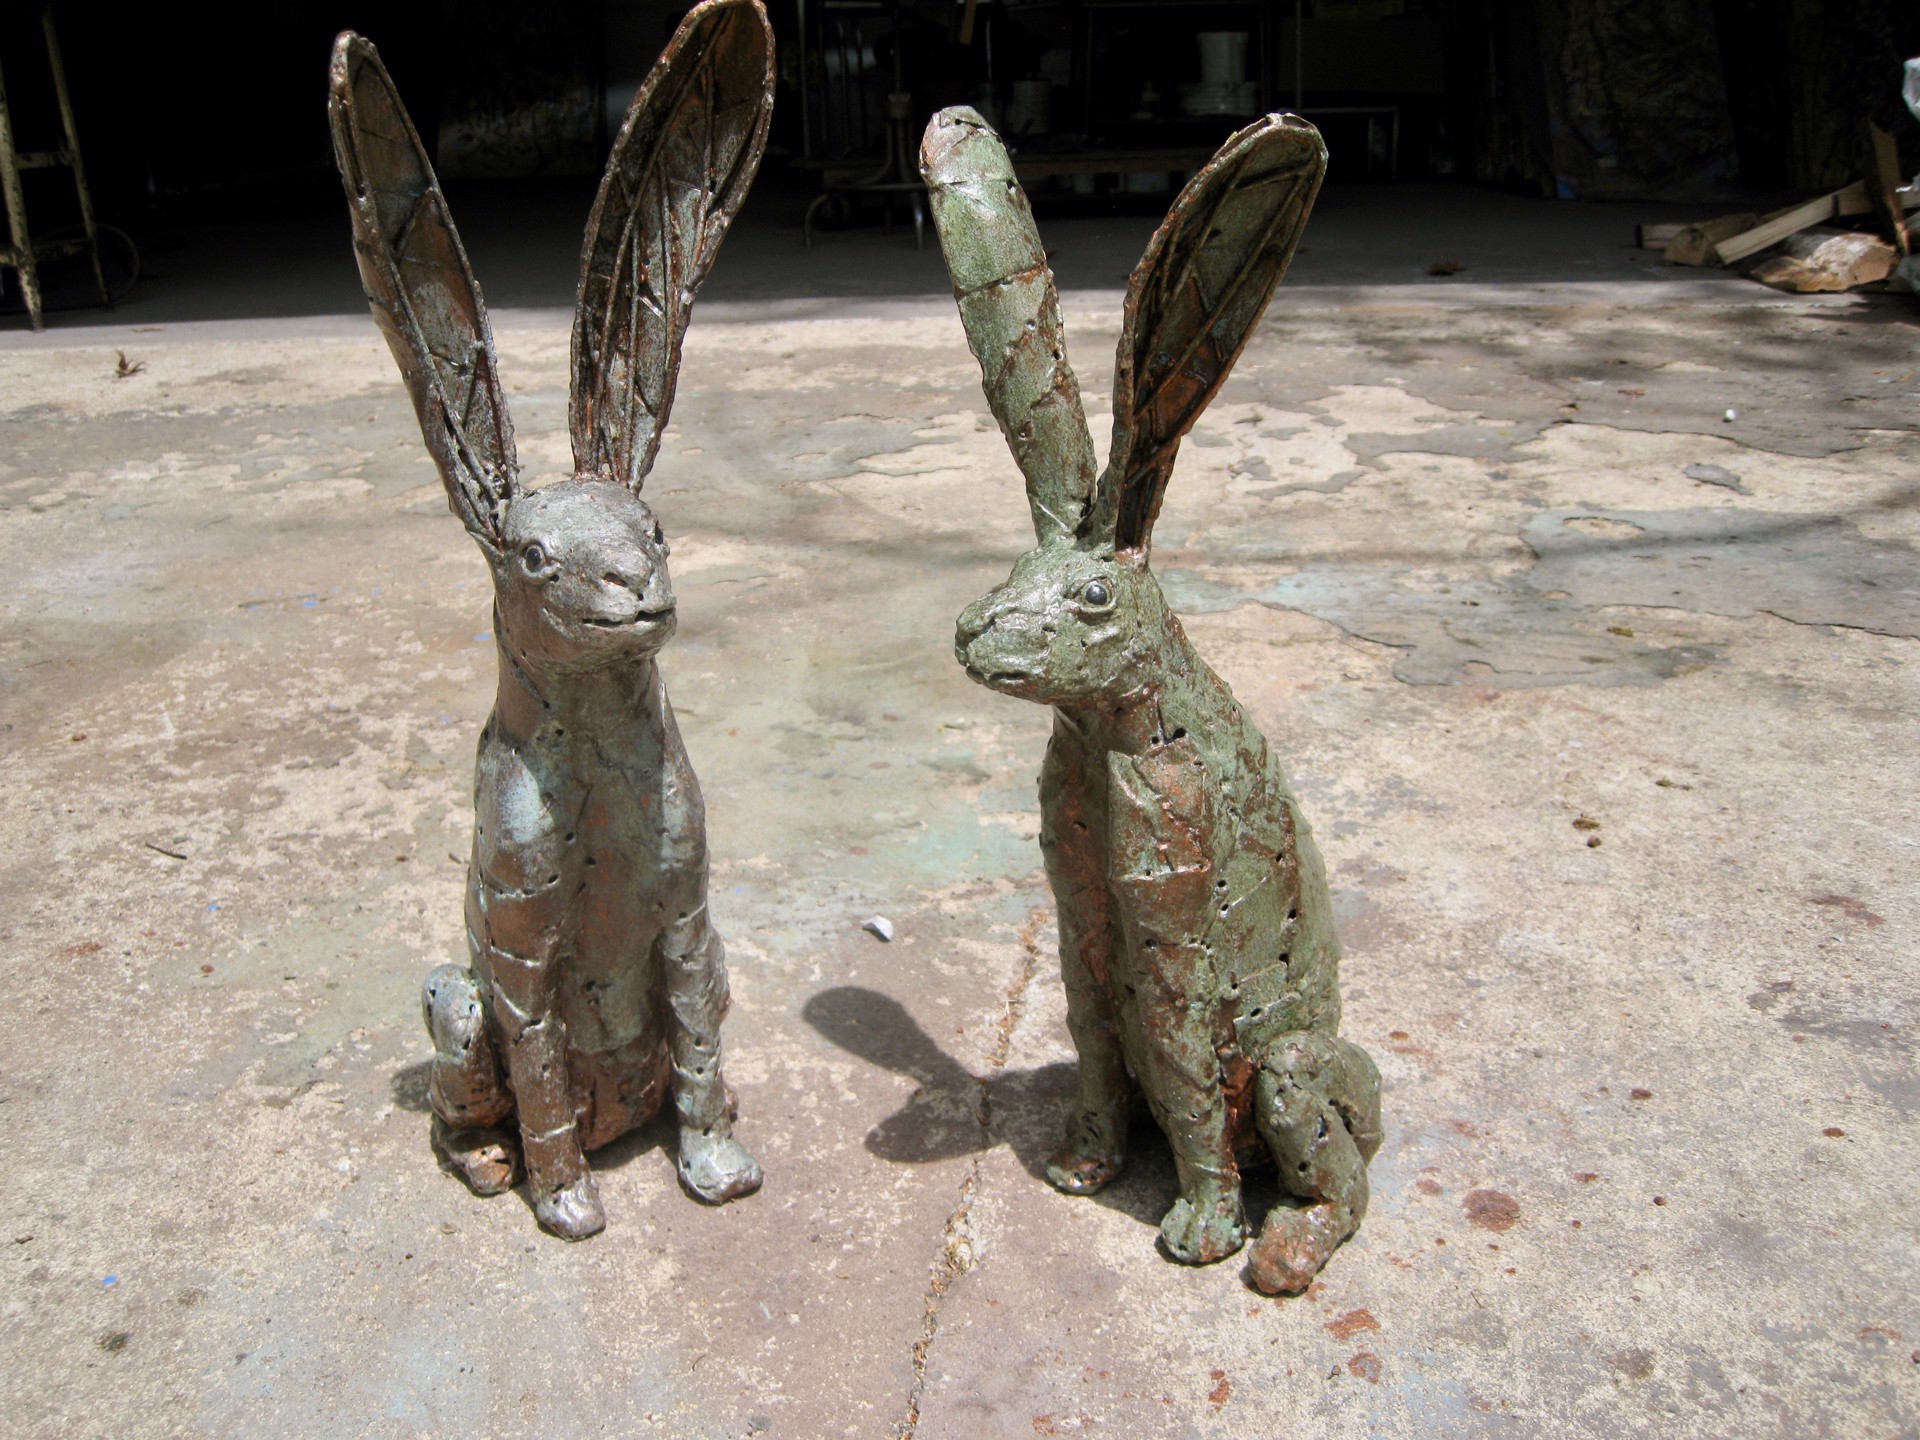 Jack Rabbit 1 by William Allen